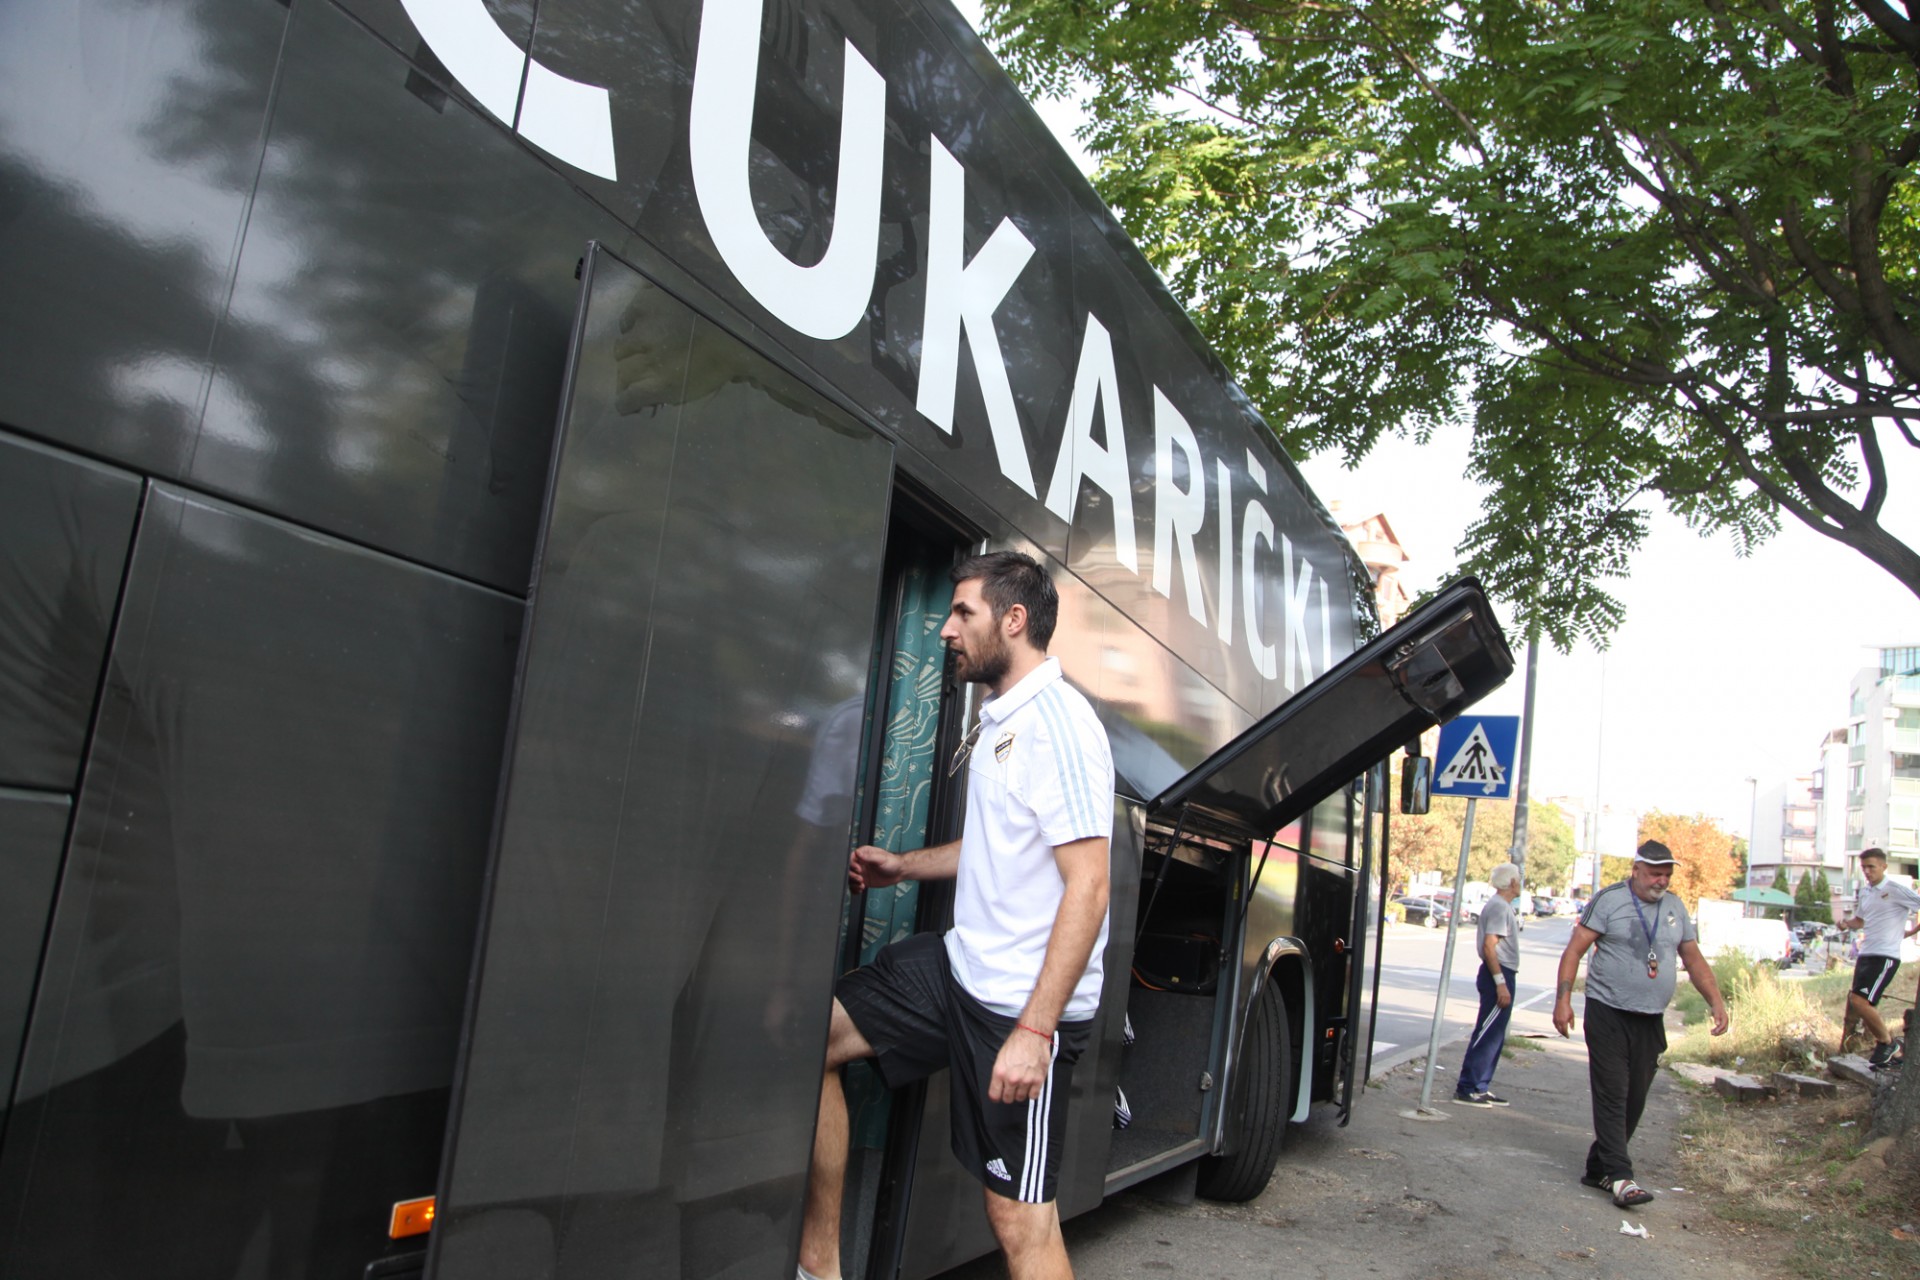 Belić ulazi u autobus - Nemanja Belić | FkCukaricki